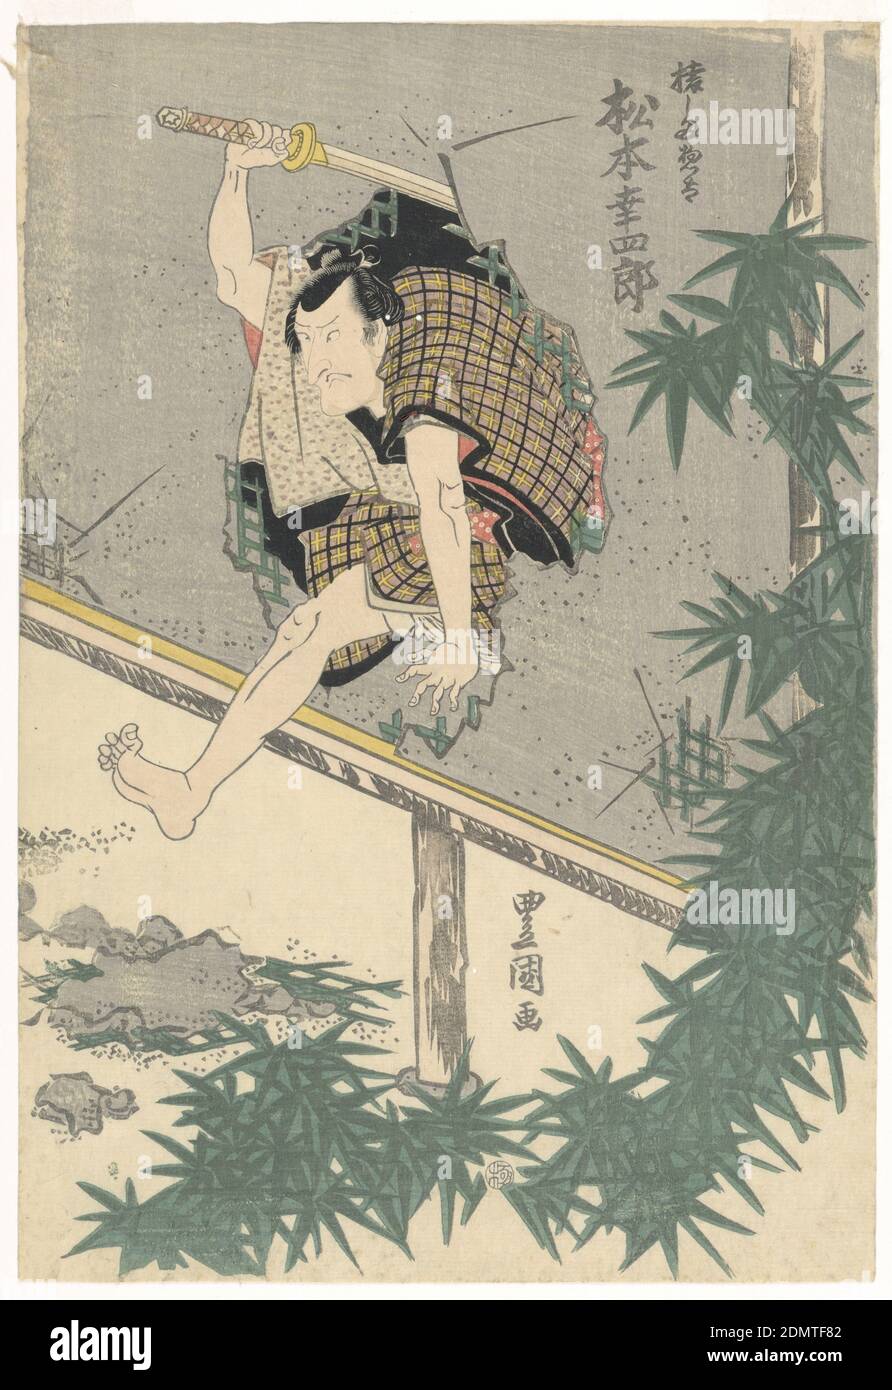 Matsumoto Koshiro springt durch eine Wand, Holzblock-Druck in farbiger Tinte auf Papier, ein animierter Samurai, Matsumoto Koshiro springt durch ein Loch in einer Wand mit seinem Schwert in der Mitte der Schaukel über seinem Kopf. Beachten Sie, wie dieser berauschende Druck elegant mit Bambusblättern gerahmt die organische Form des gestanzten Lochs ergänzt., Japan, ca. 1835, Theater, Druck Stockfoto